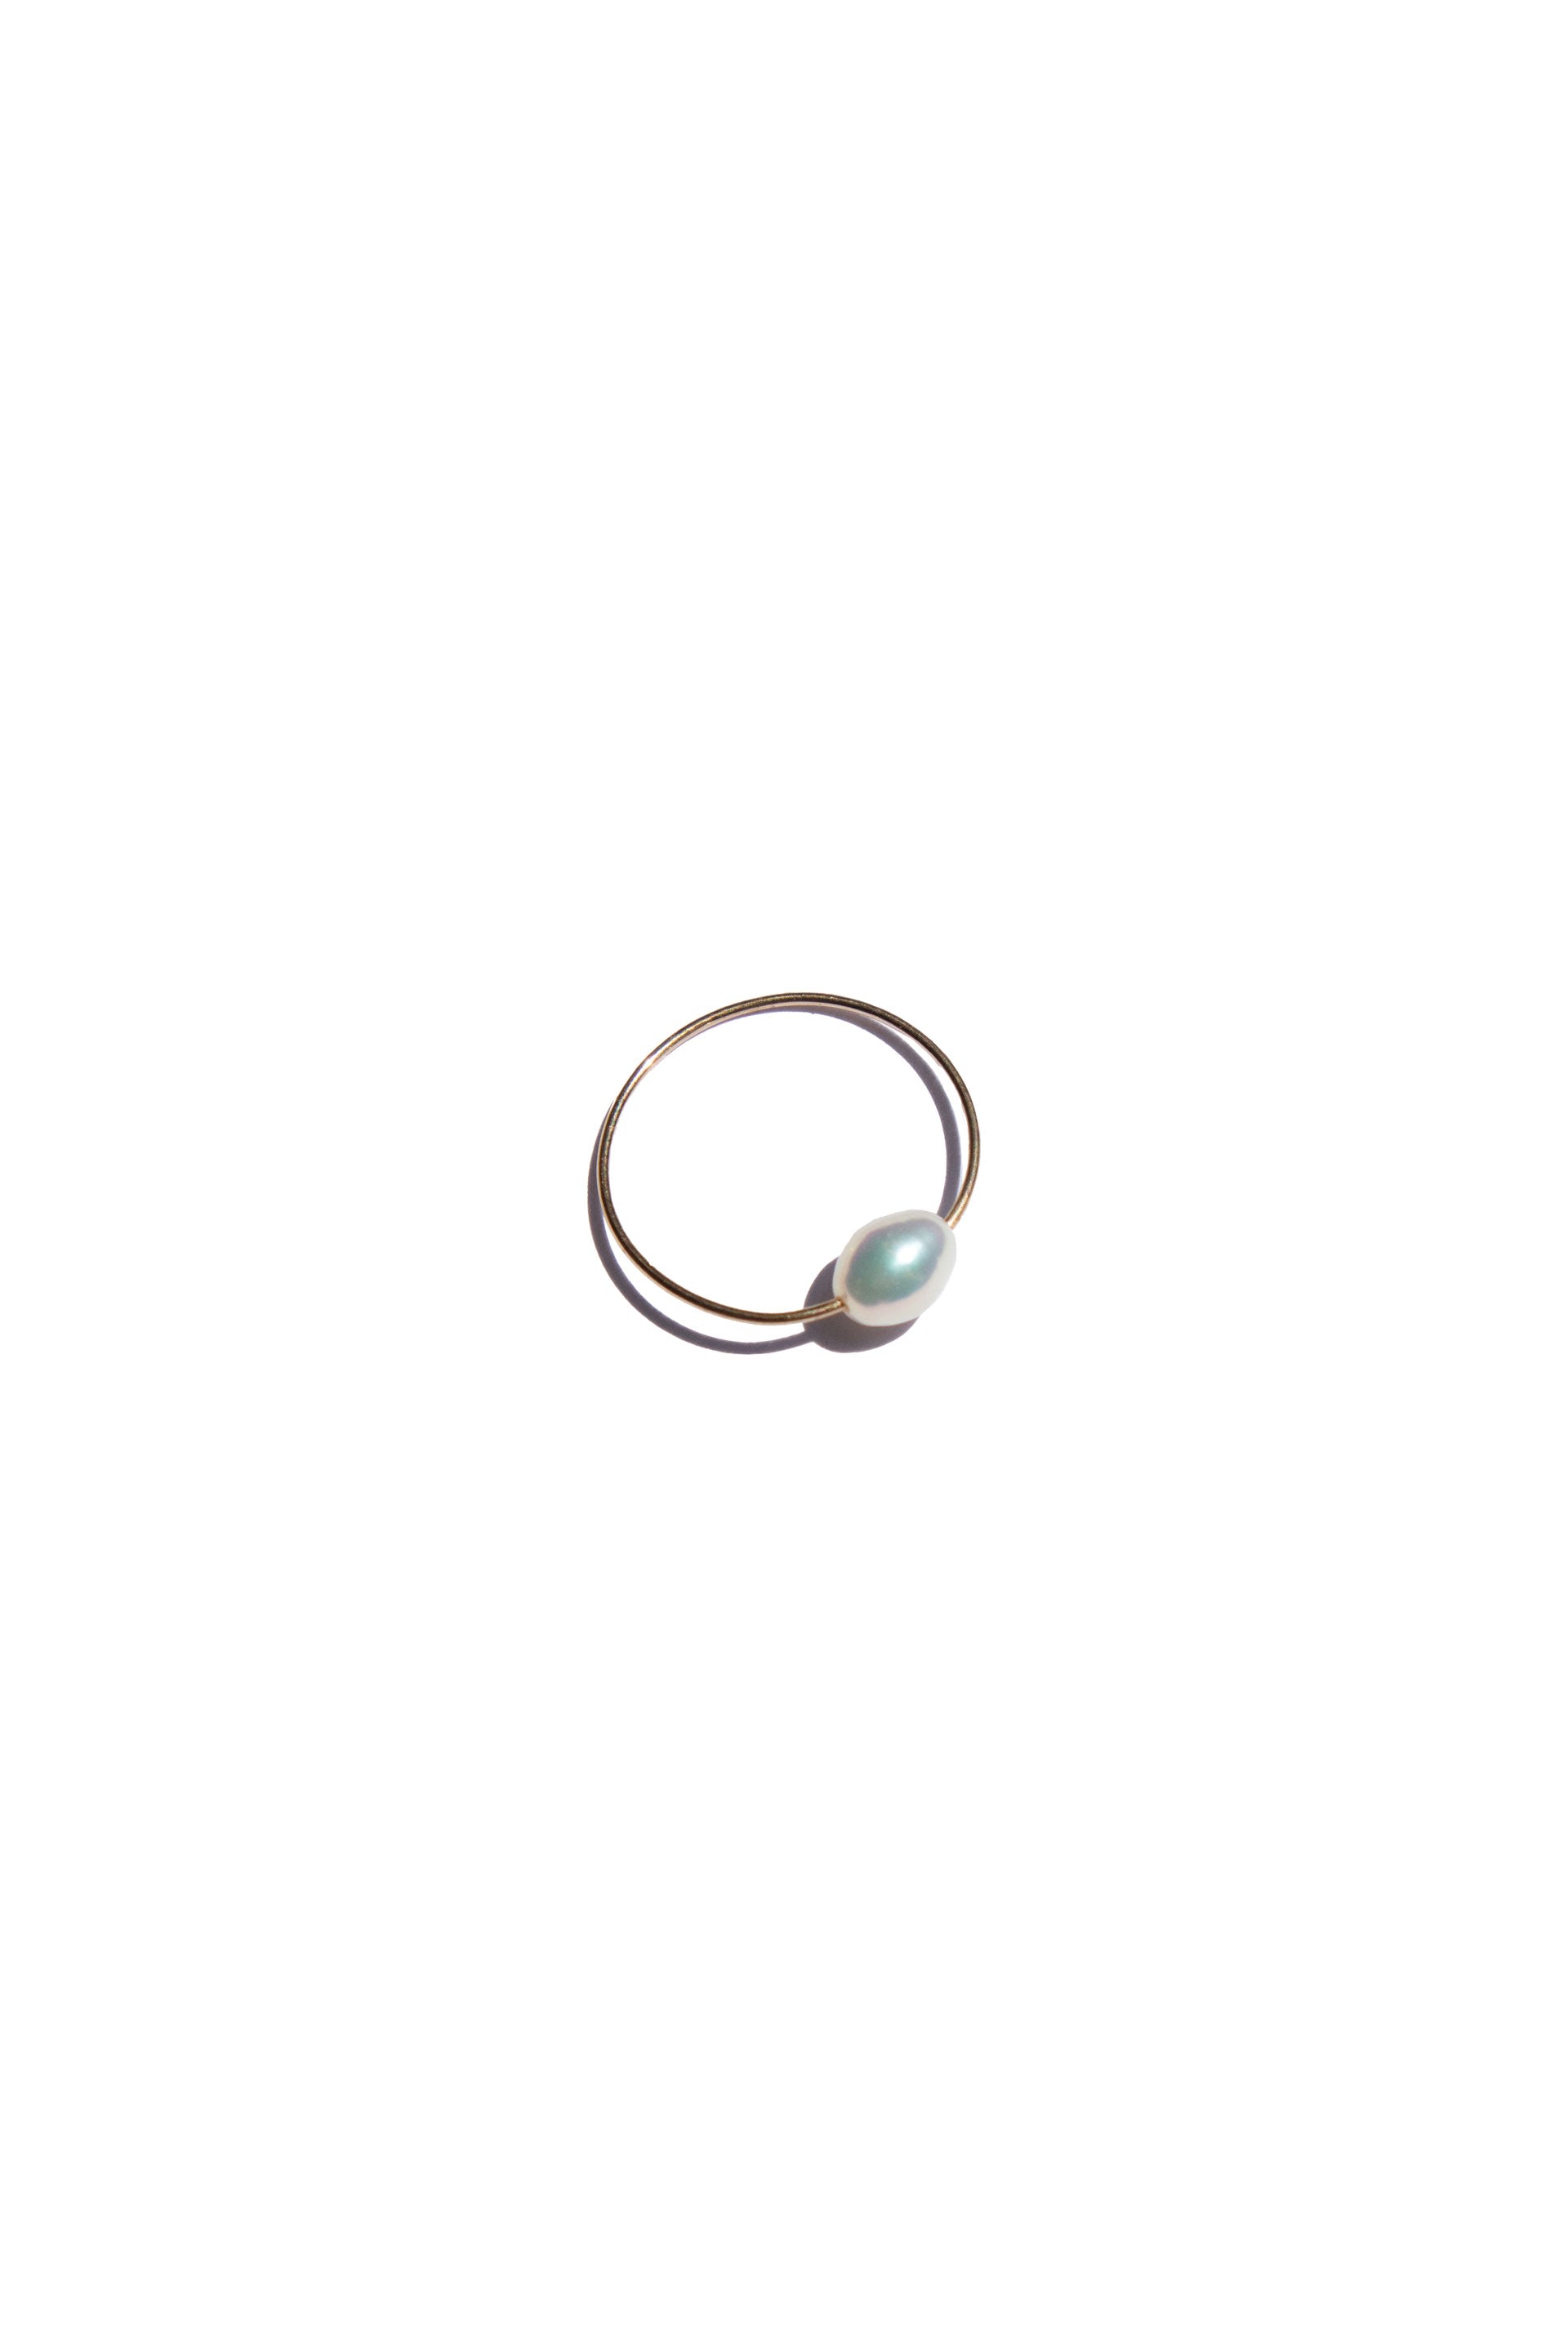 Seree Women's White Eden Freshwater Pearl Skinny Gold Ring